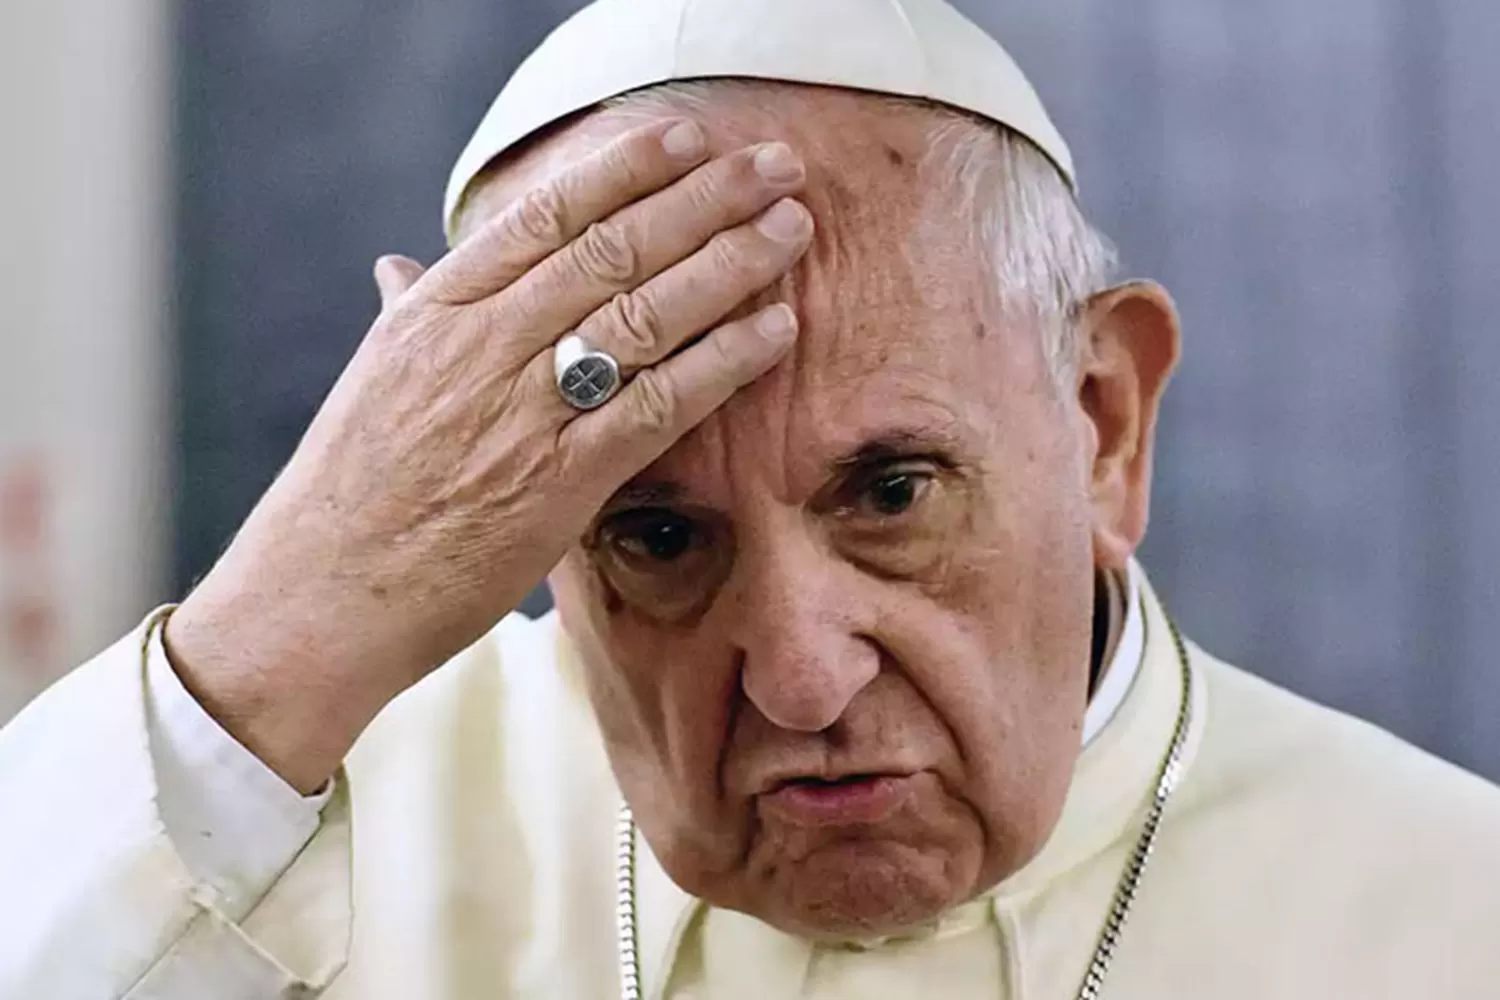 MISIVA. El Sumo Pontífice dijo que la Iglesia calló los abusos sexuales